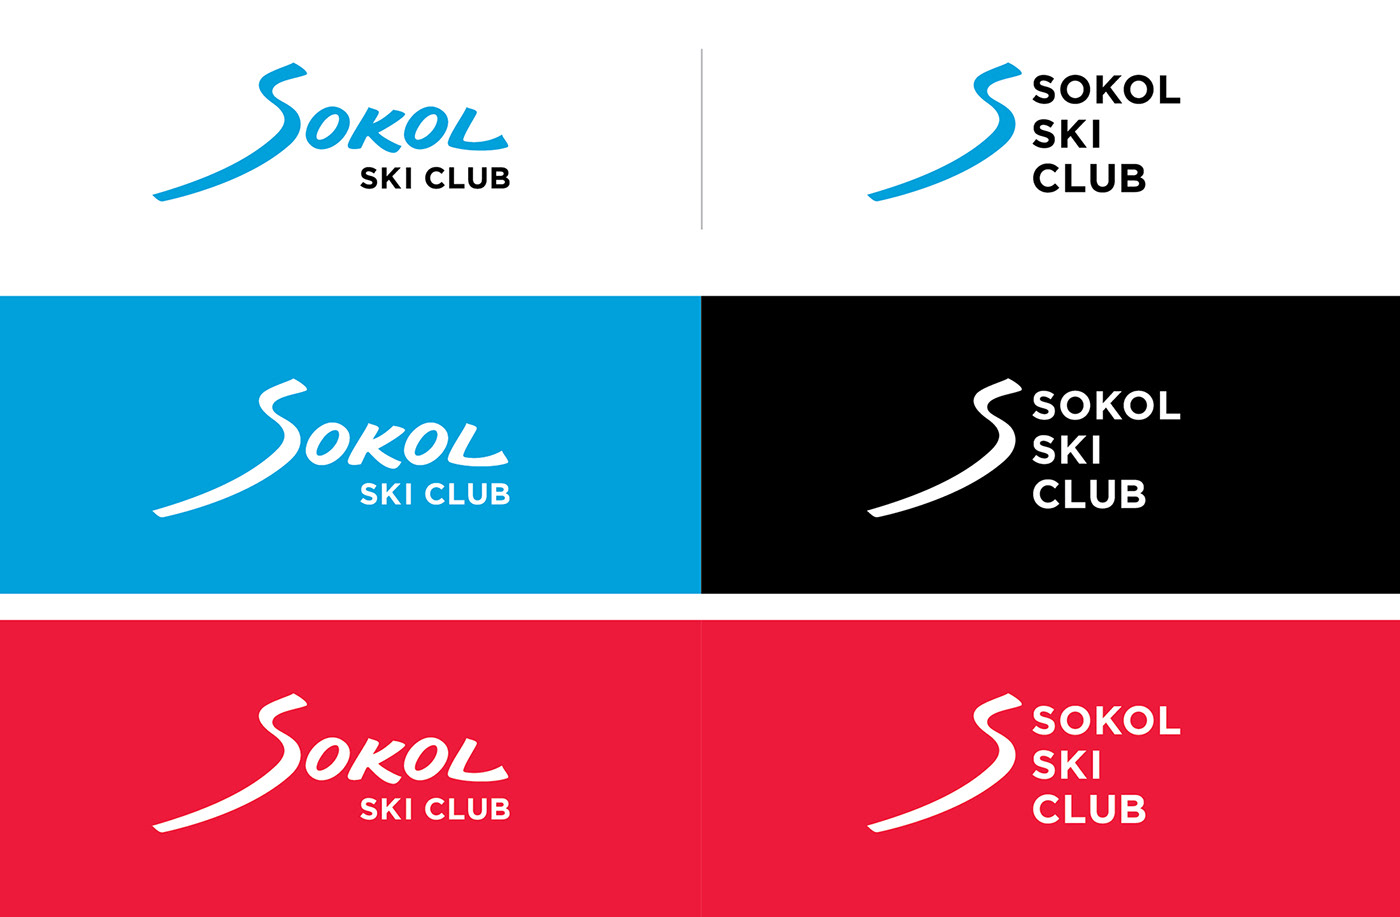 брендинг фирменный стиль спорт sokol айдентика логотип Спортивная школа горнолыжная школа branding  identity